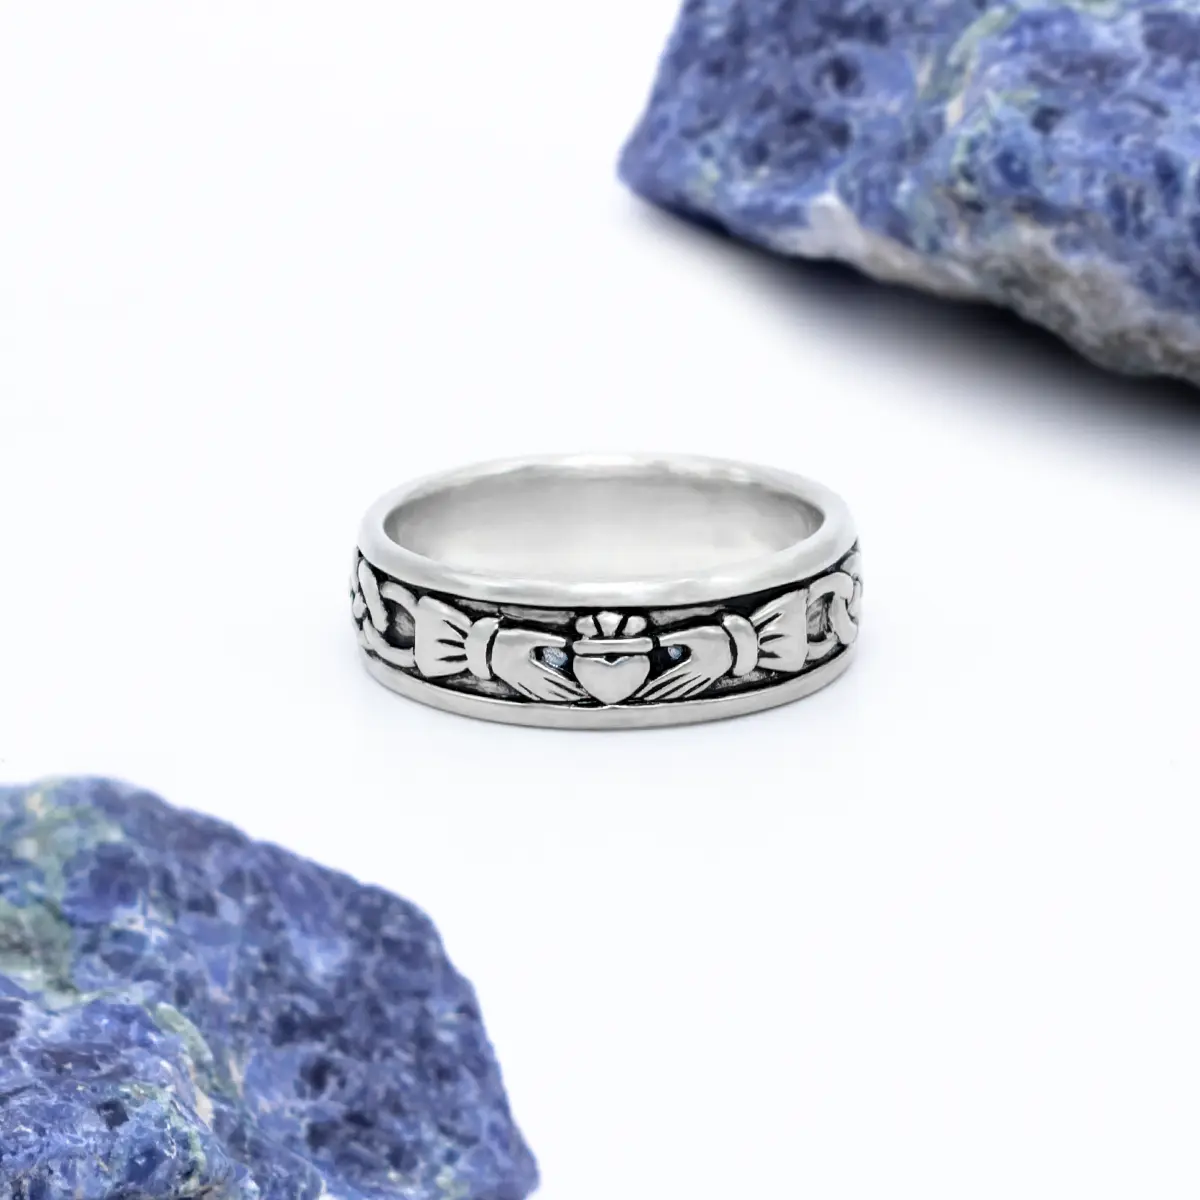 Womens Irish Rings - Irish Ring Jewelry